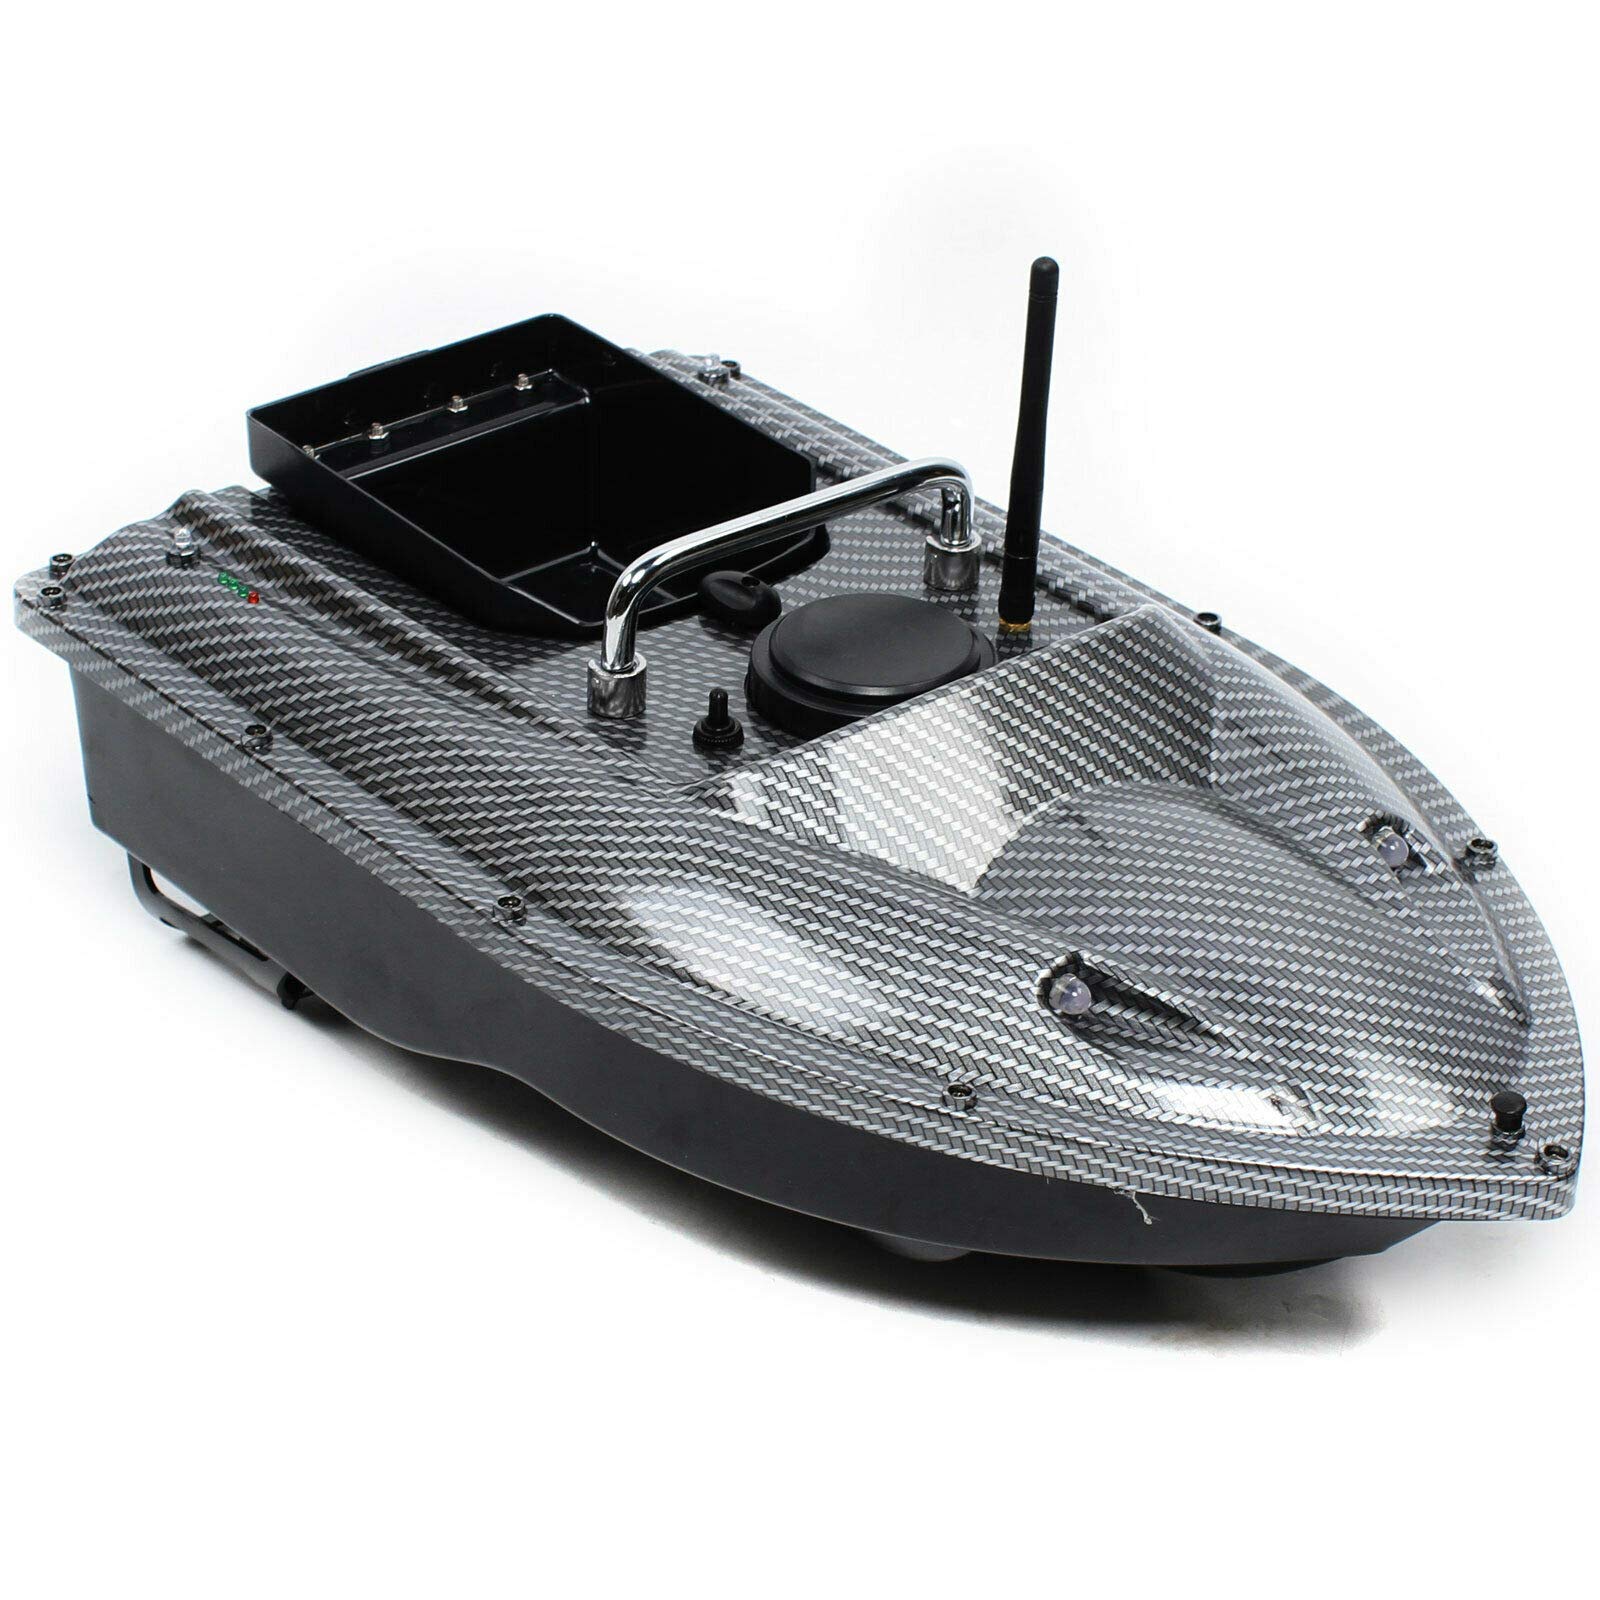 500m senza fili, barca intelligente da pesca, barca telecomandata con LED luci 